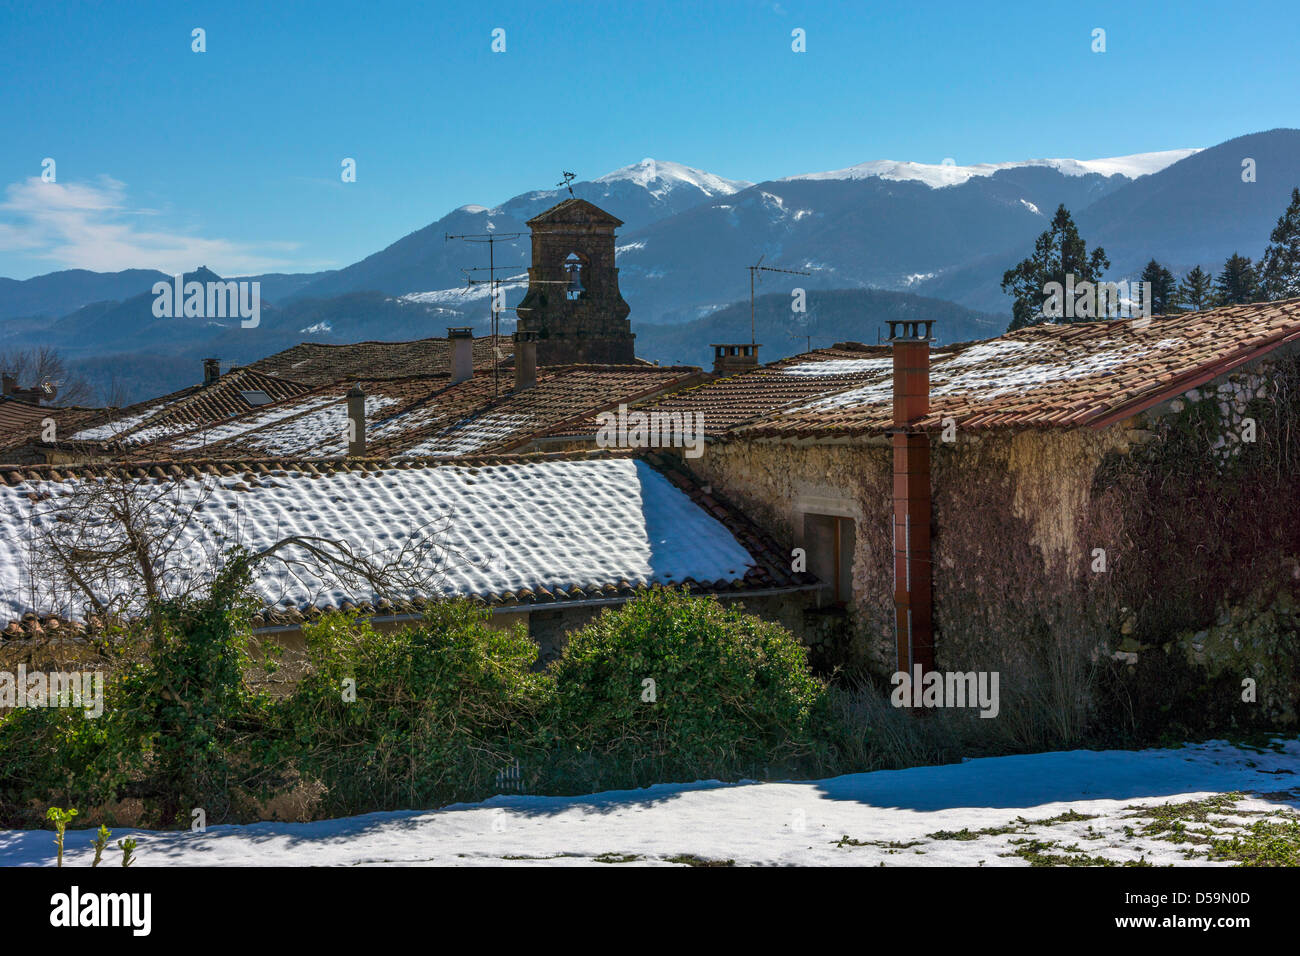 Vue vers les Pyrénées enneigés avec clocher de l'église et le toit de neige, ciel bleu Banque D'Images